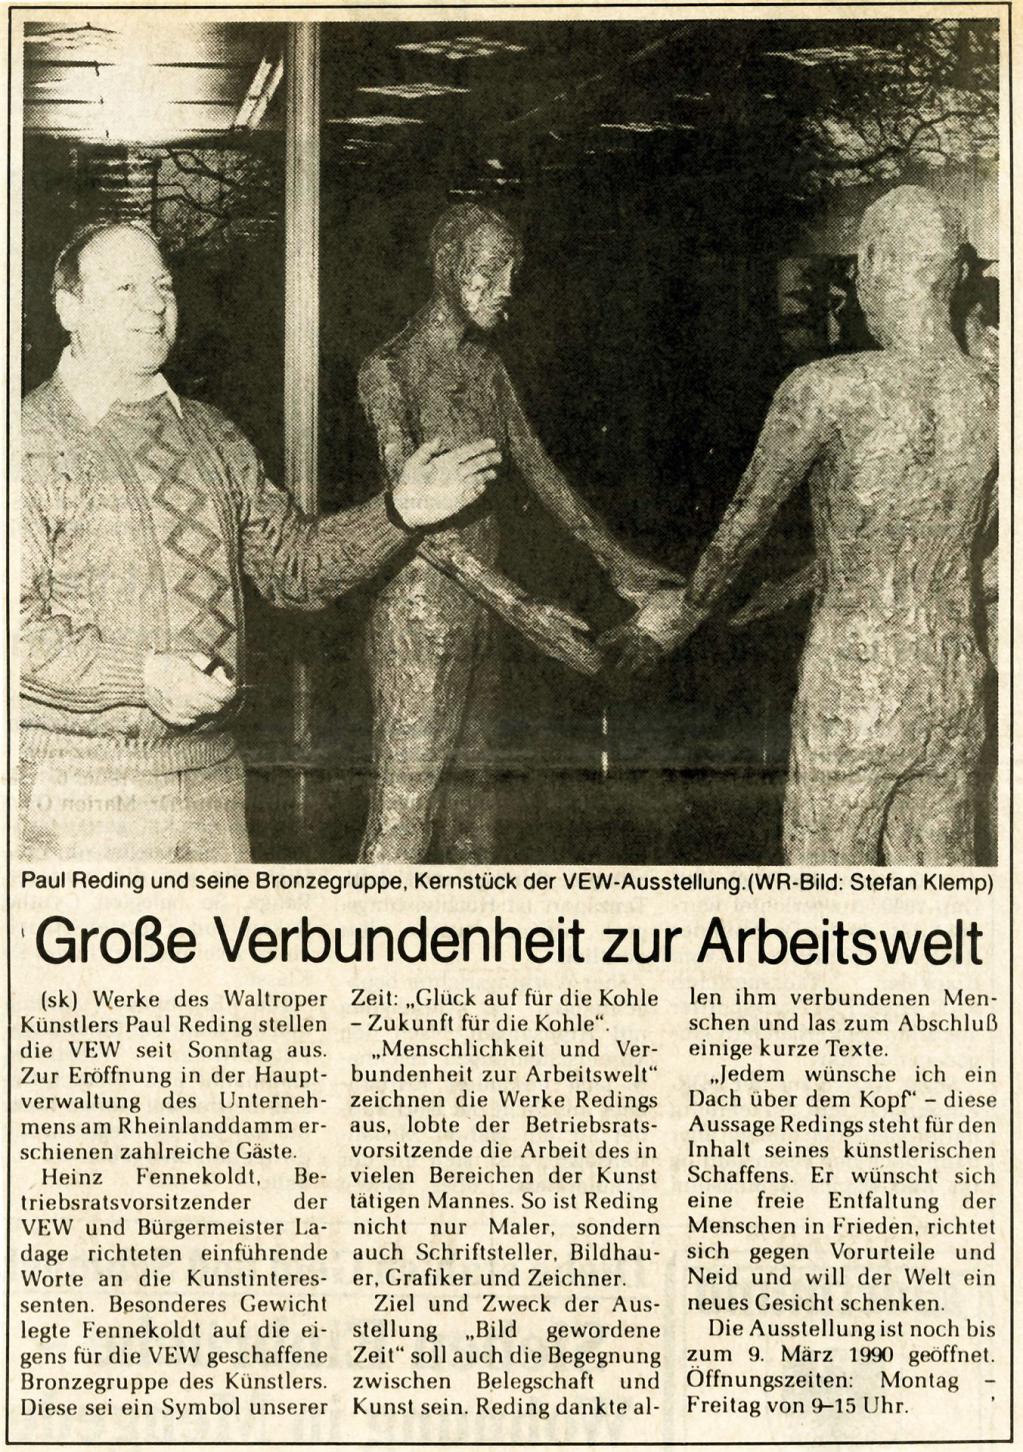  Februar 1990, Westfälische Rundschau